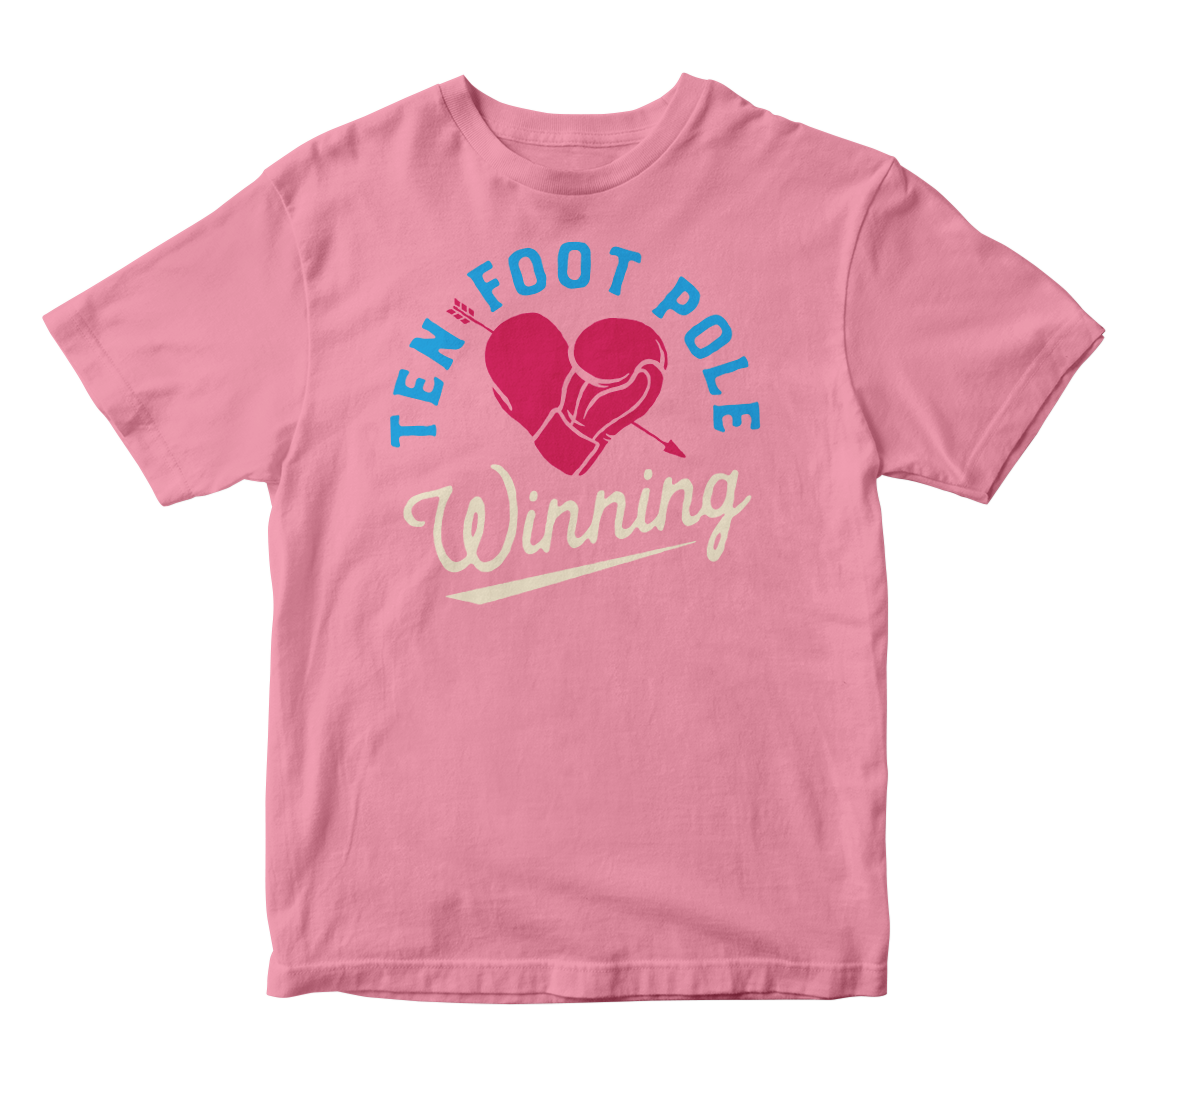 TEN FOOT POLE - "Winning Heart" (Light Pink) (Youth T-Shirt)